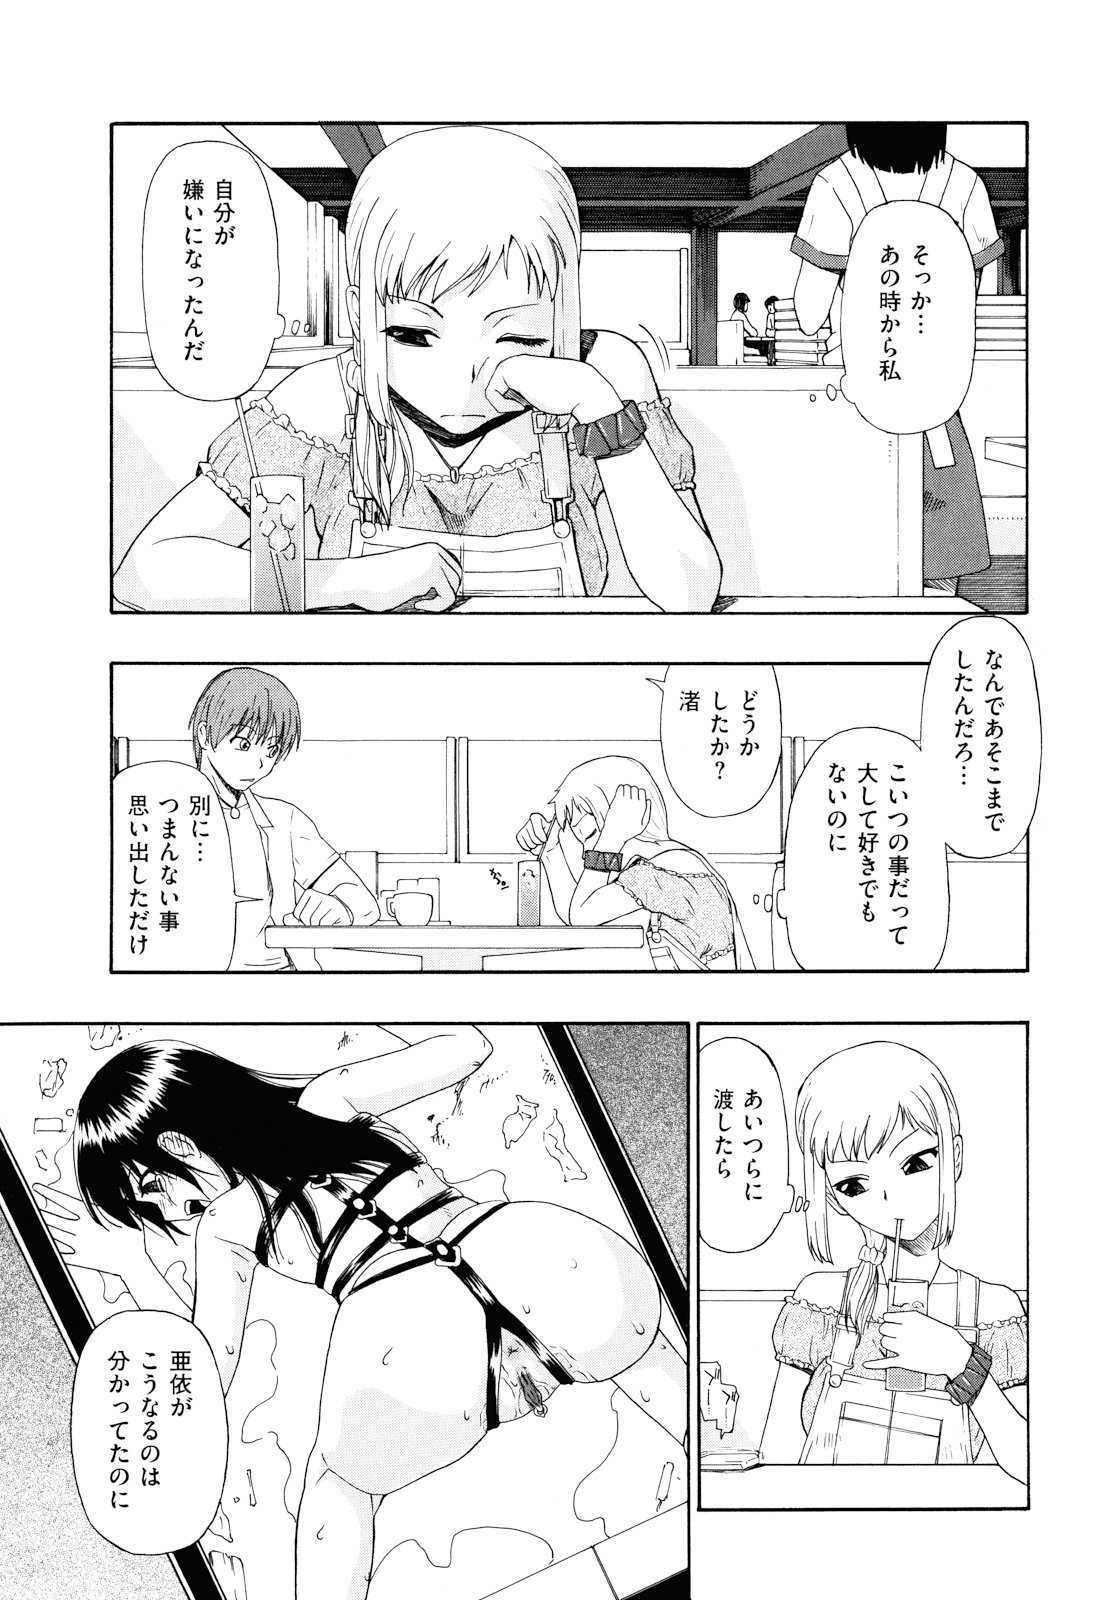 [Oyster] Watashi Kirei? page 36 full